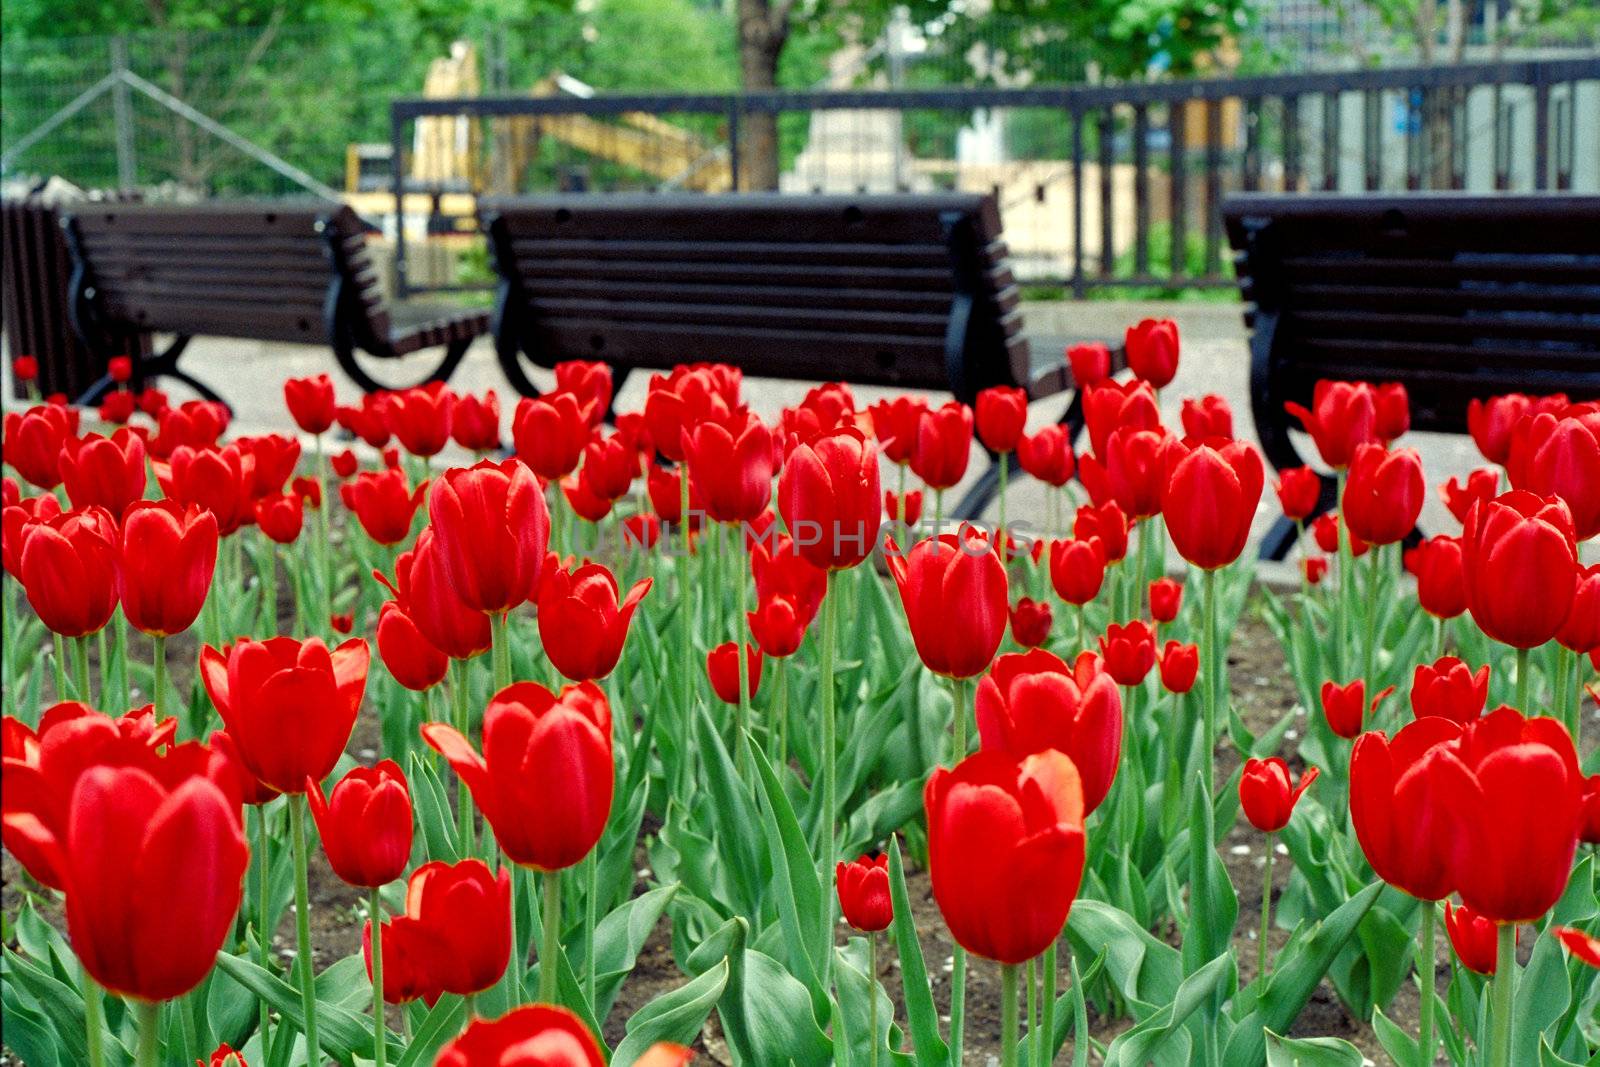 Field of tulipe in a park